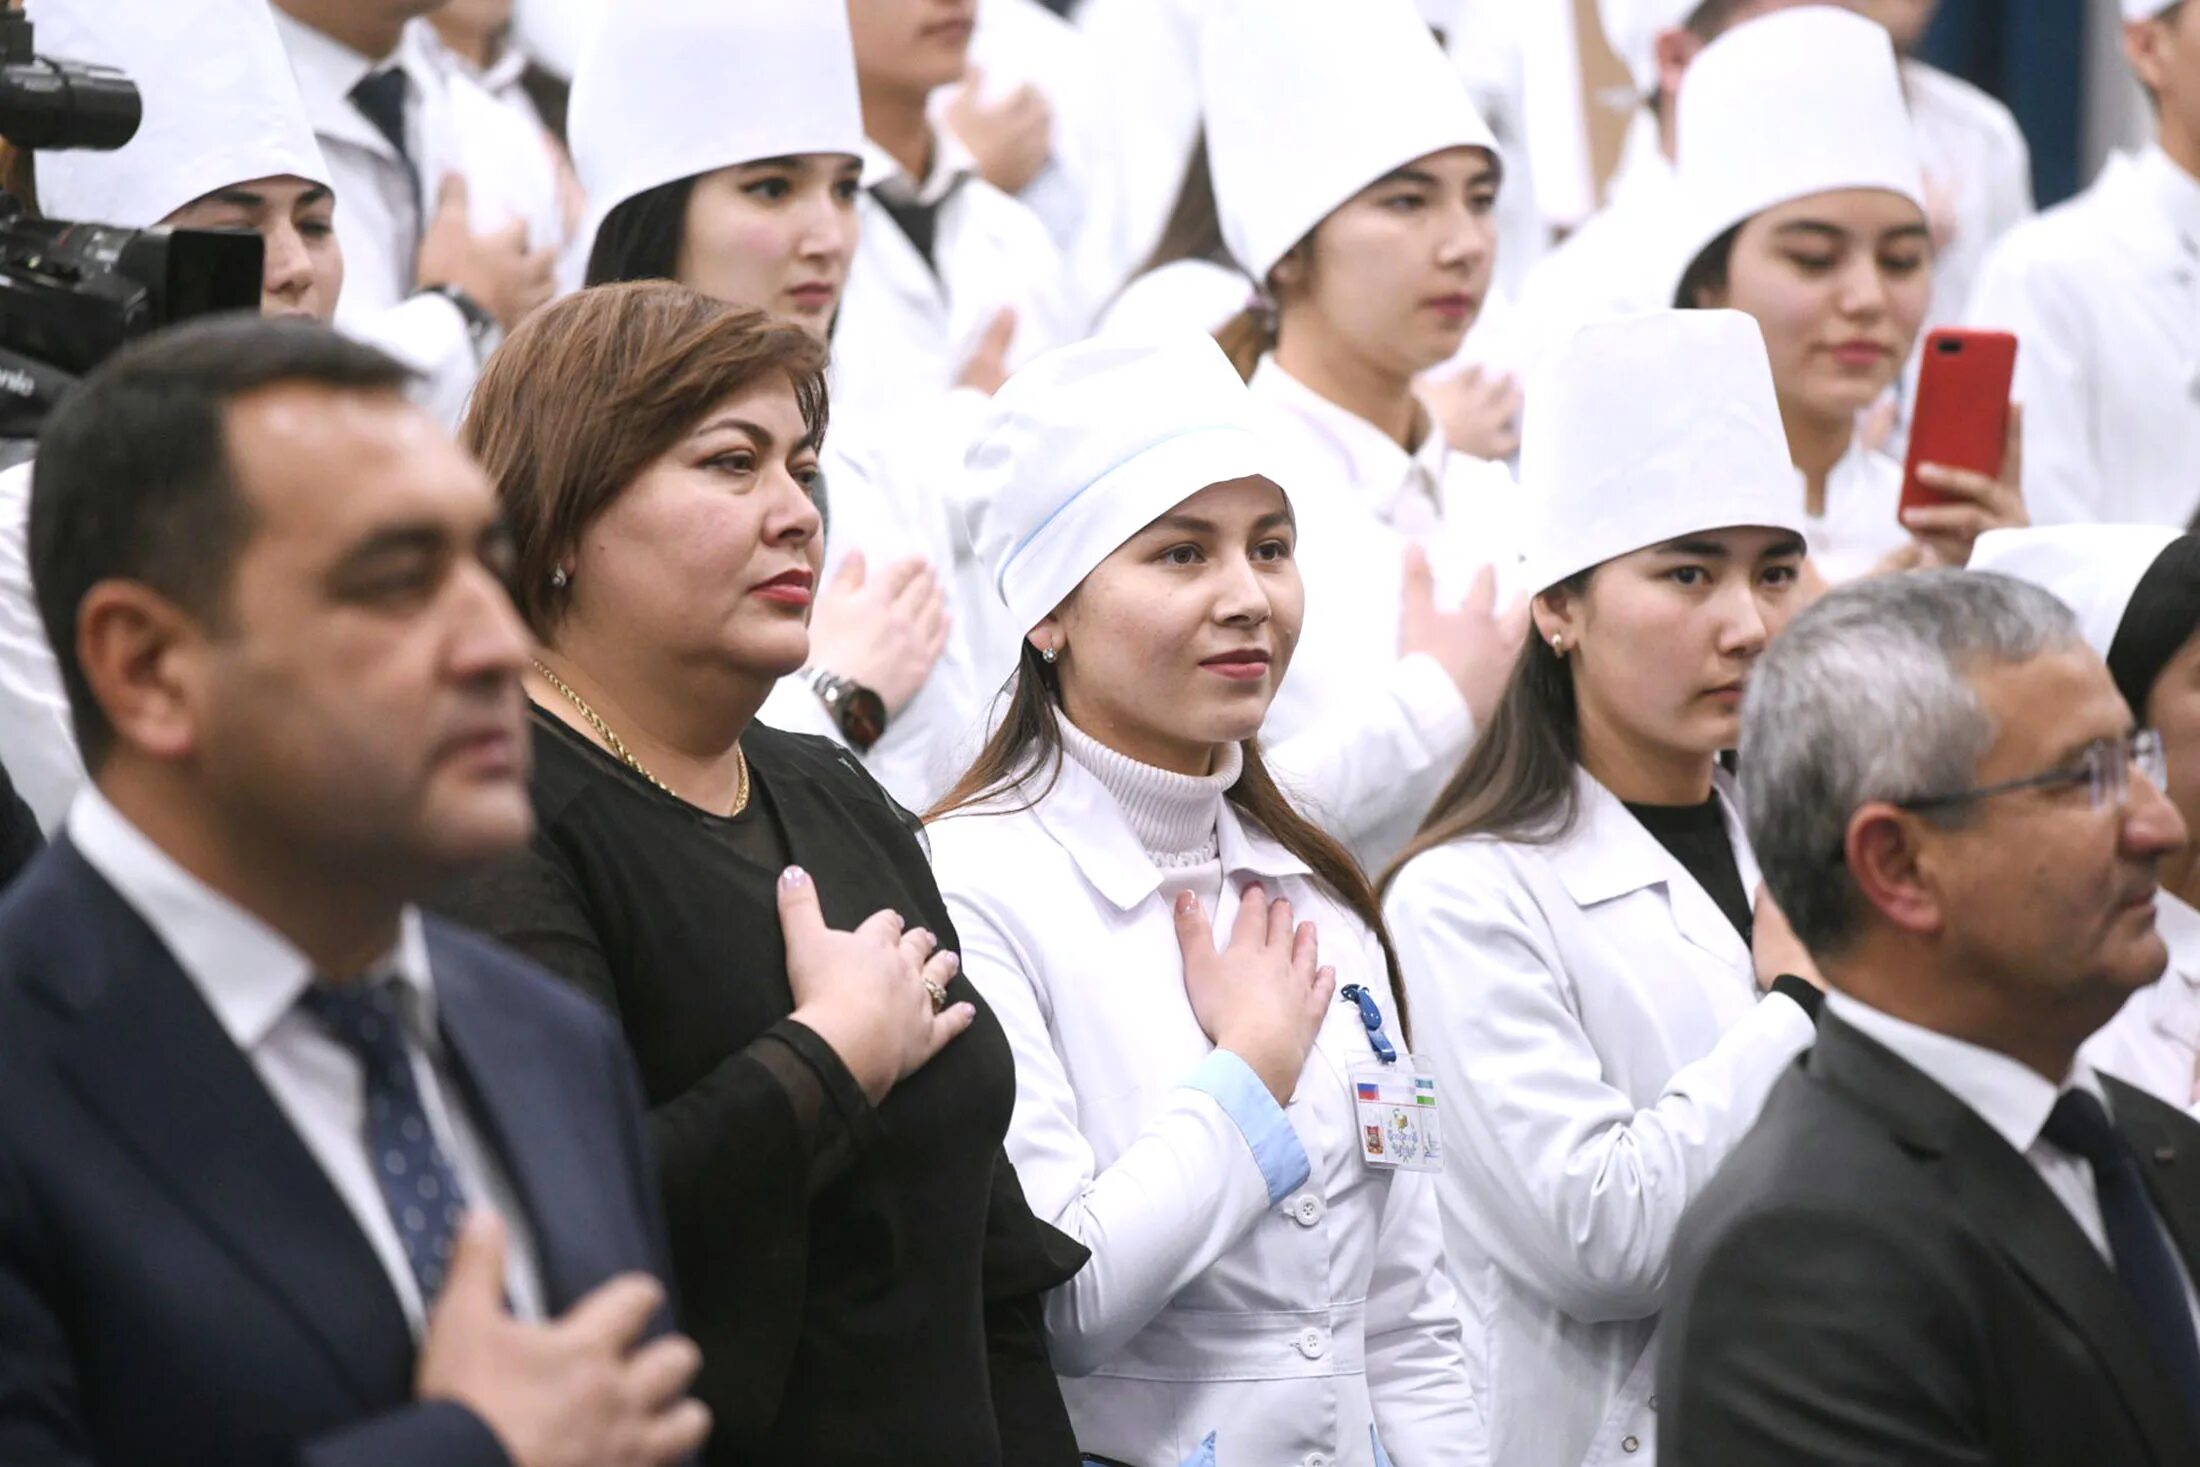 Клятва врача 14. Медики клятва Гиппократа. Врачи дают клятву. Студенты Узбекистана. Студенты-медики клятву Гиппократа.